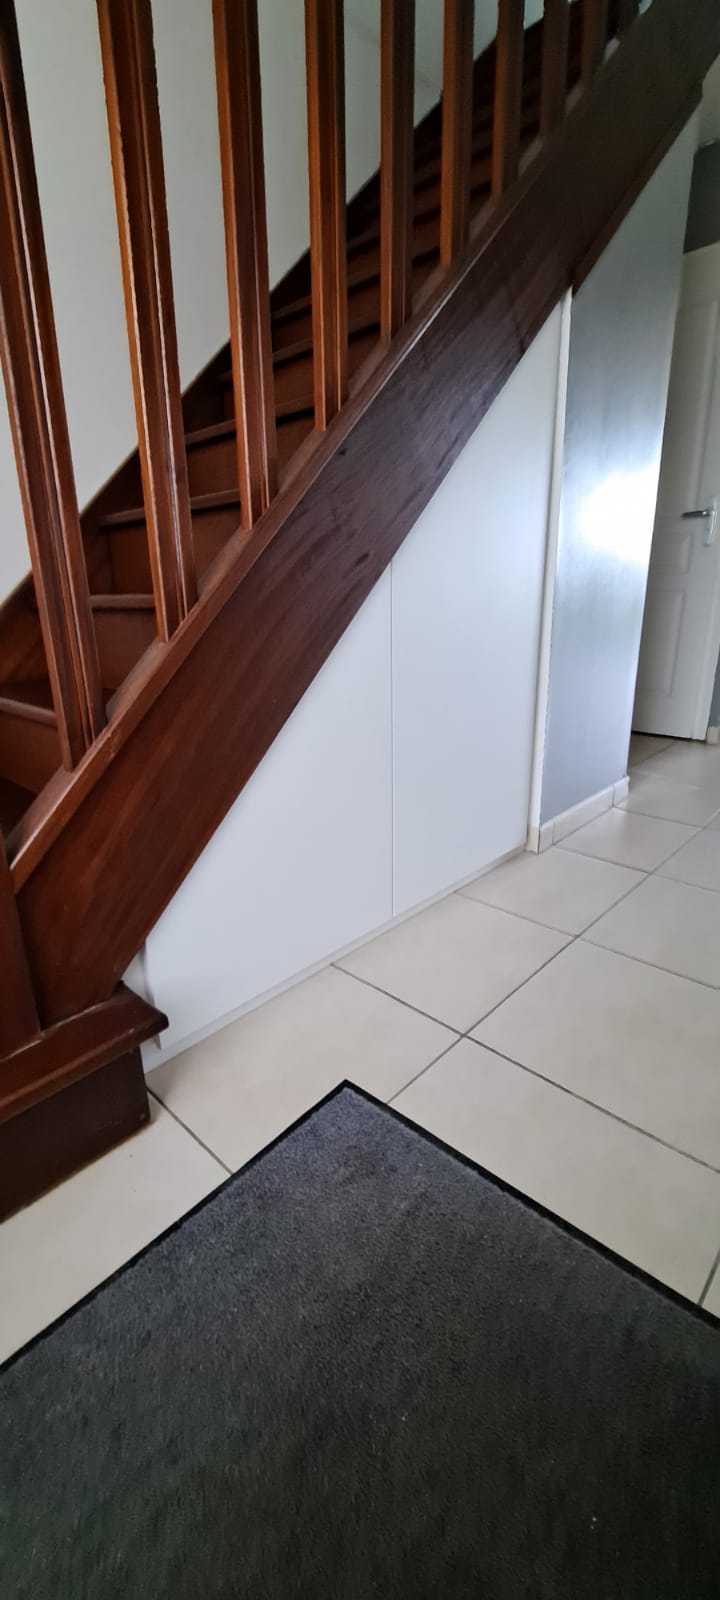 sur cette photo on voit l'escalier avec le meuble fermé